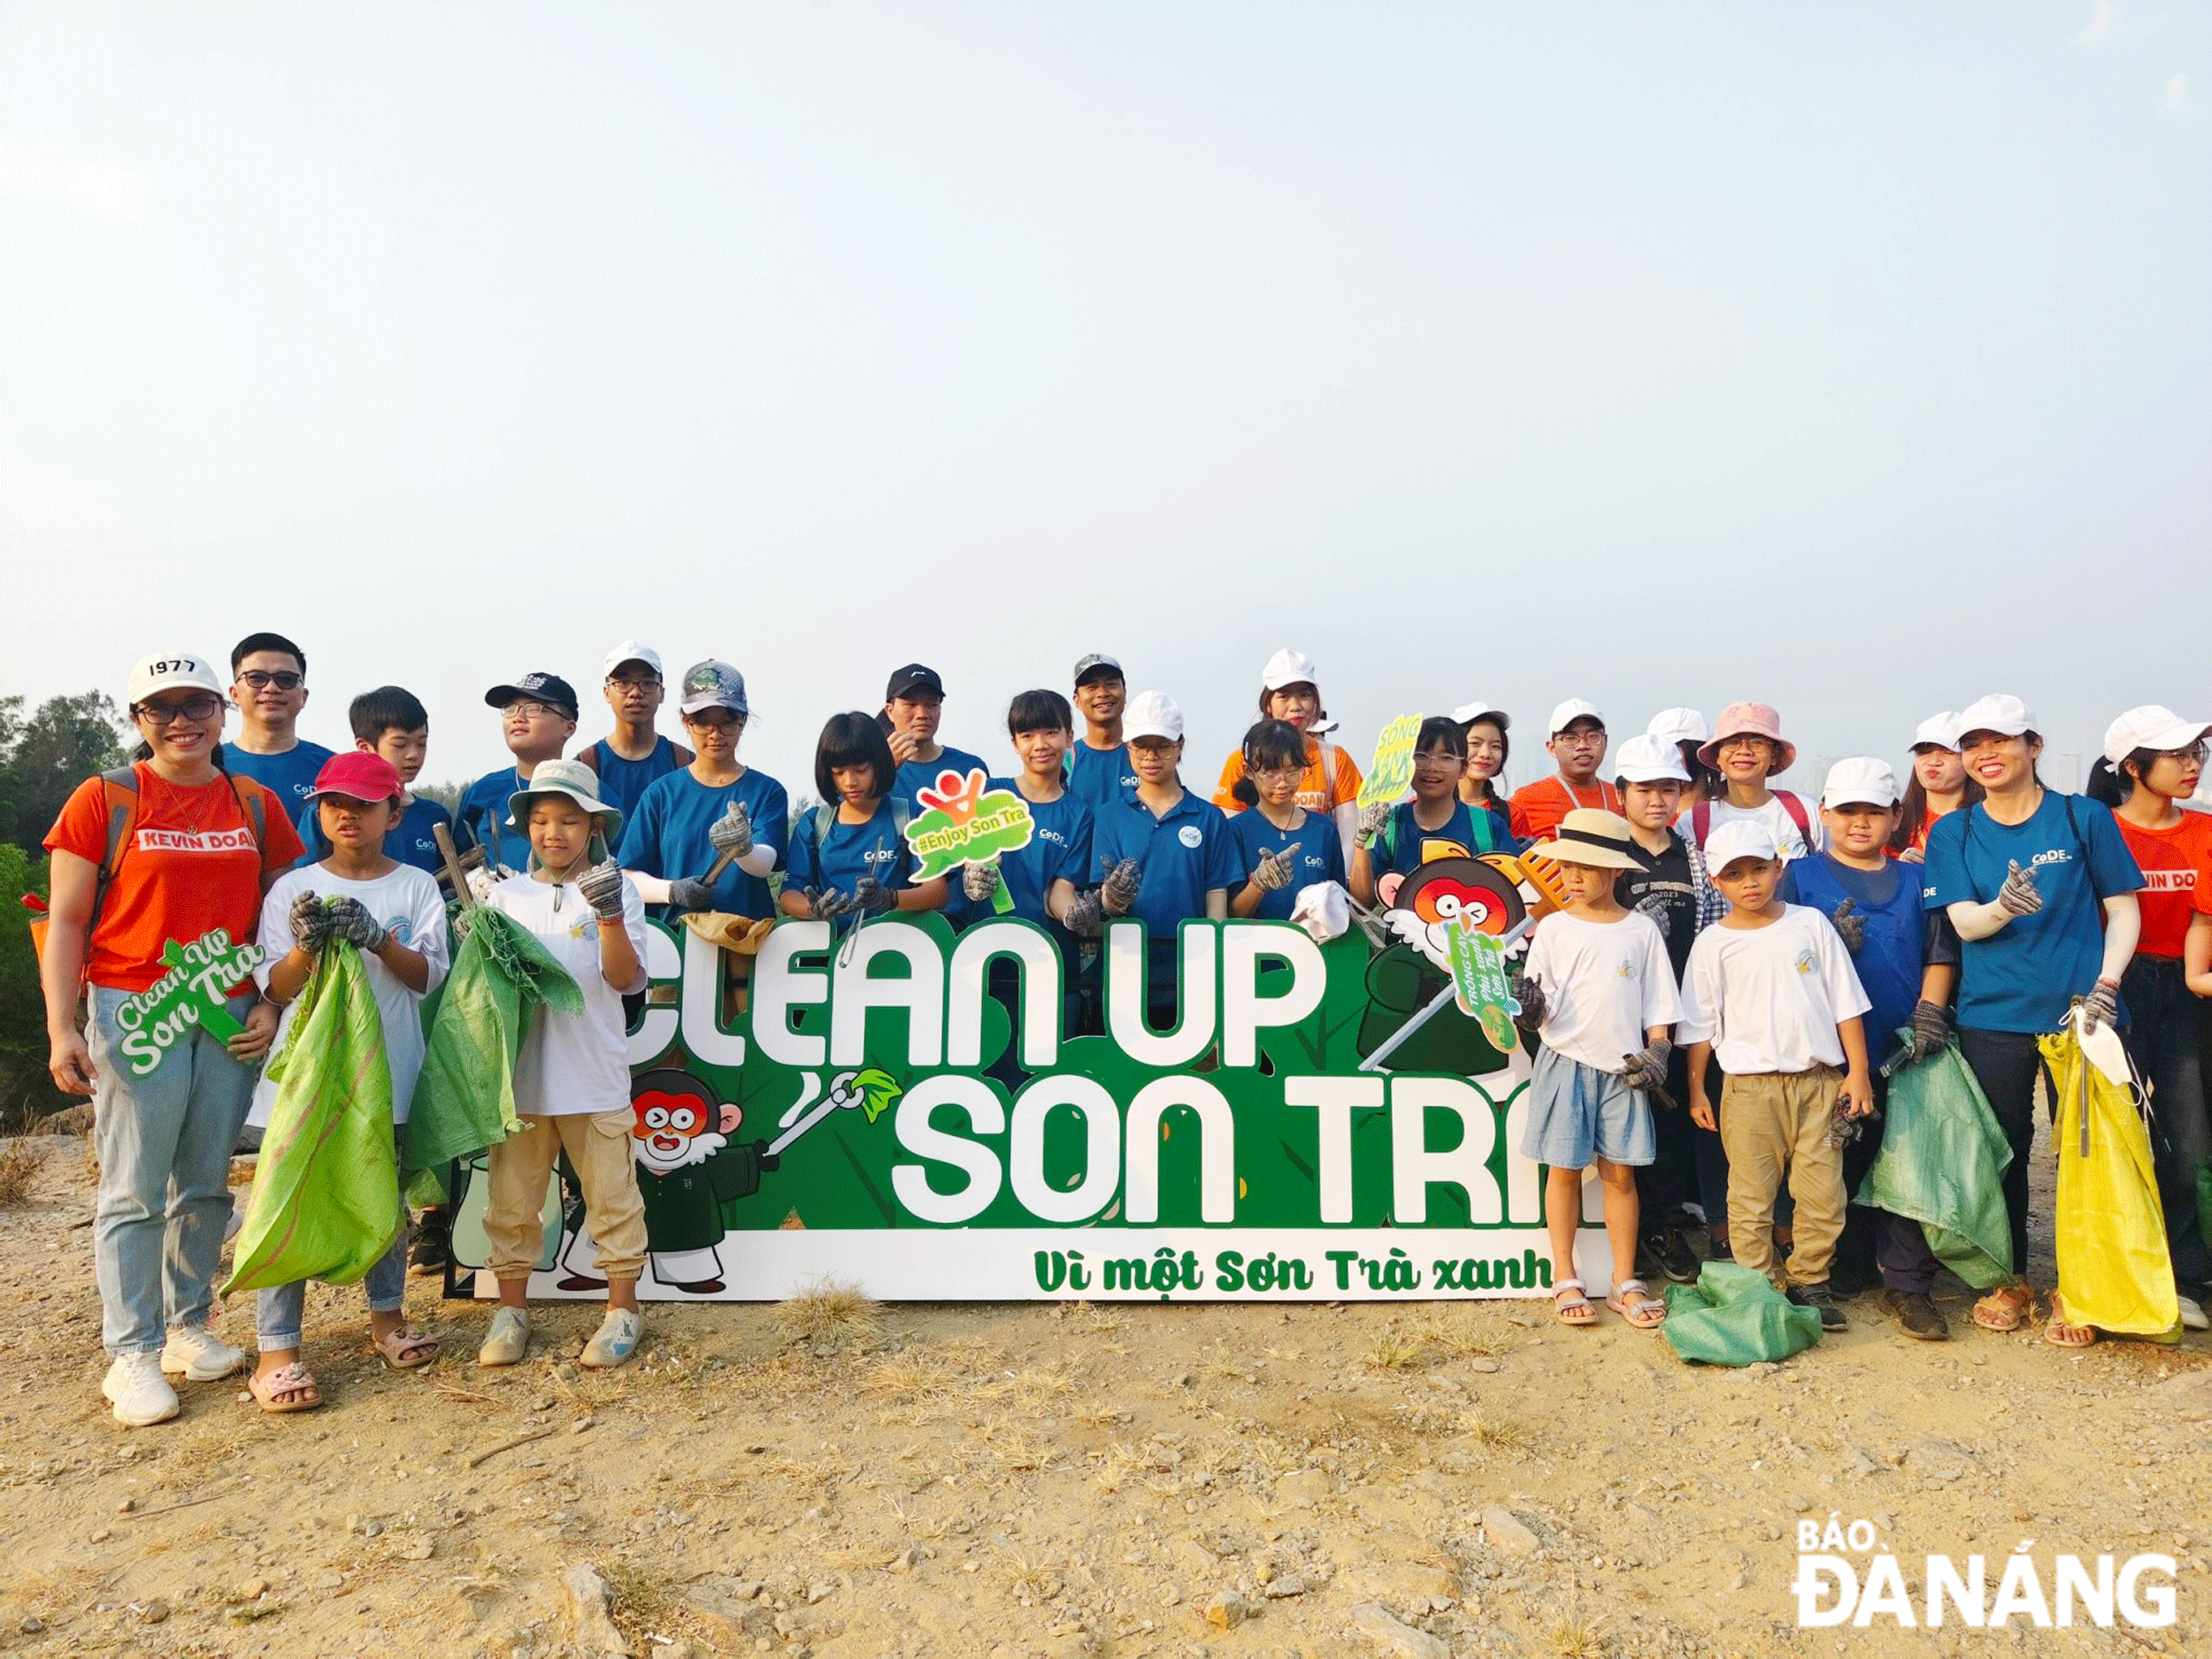 Da Nang develops green tourism